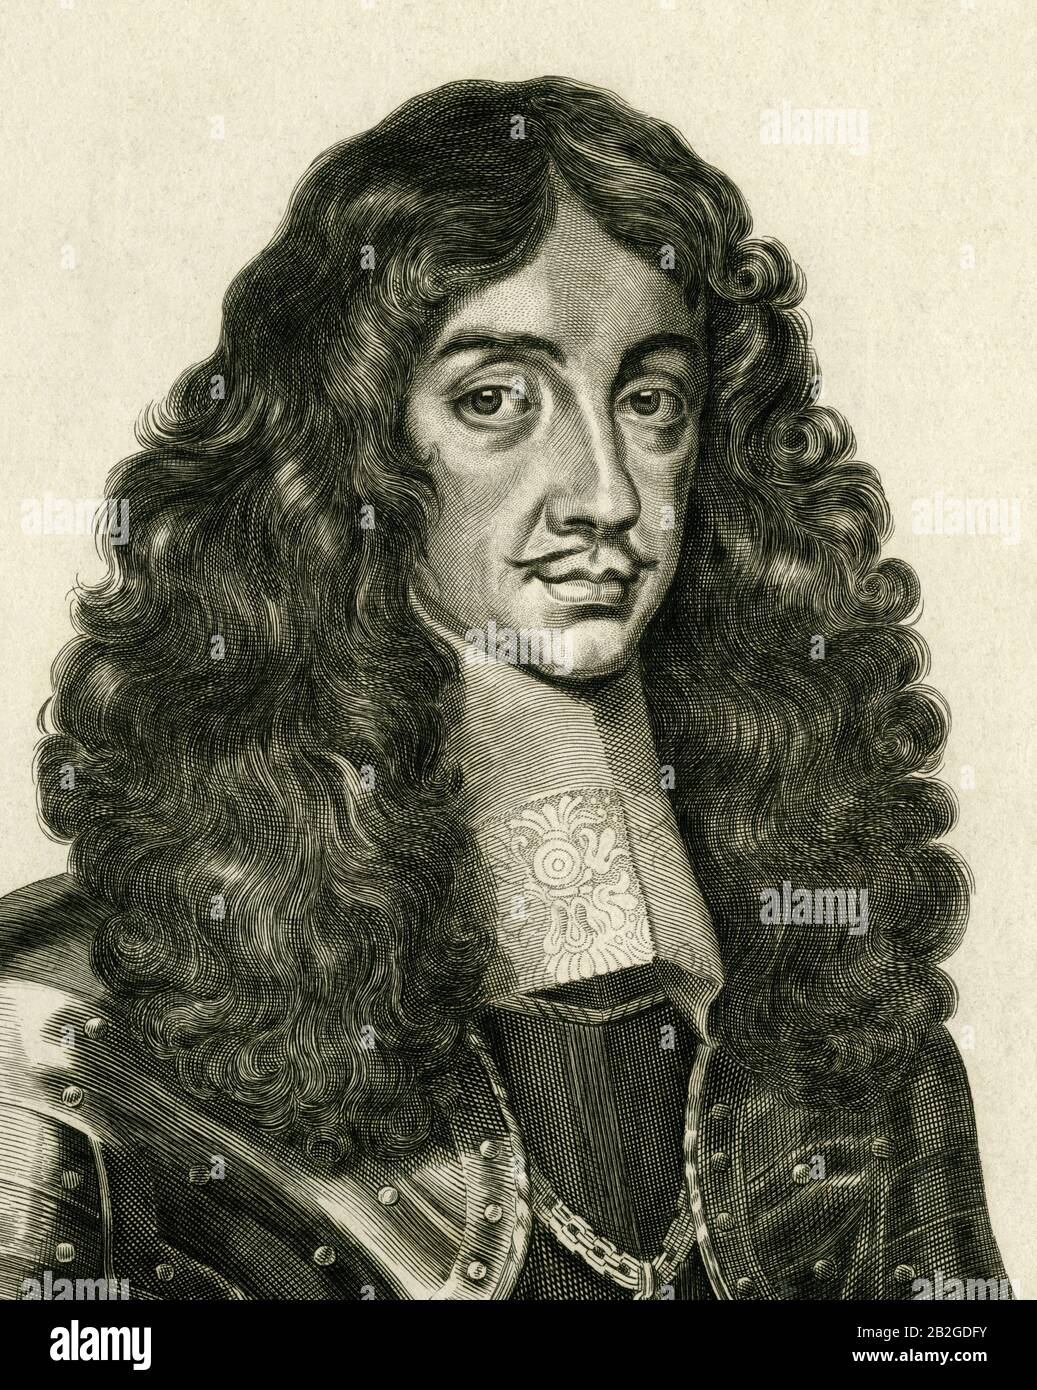 Re Carlo II (1630-1685), monarca inglese della Restaurazione che combatté per la Corona durante le guerre civili inglesi. Dettaglio dell'incisione, pubblicato nel 1650, da William Faithorne il Vecchio (1616-1691). Faithorne era un monarchico e, come tutti i monarchici, credeva che Carlo II fosse re immediatamente dopo l'esecuzione del padre di Carlo, re Carlo i, nel 1649. Carlo II, il "Merry Monarch", fu restaurato al trono nel 1660 e il suo regno è associato a un periodo di gioia. Foto Stock